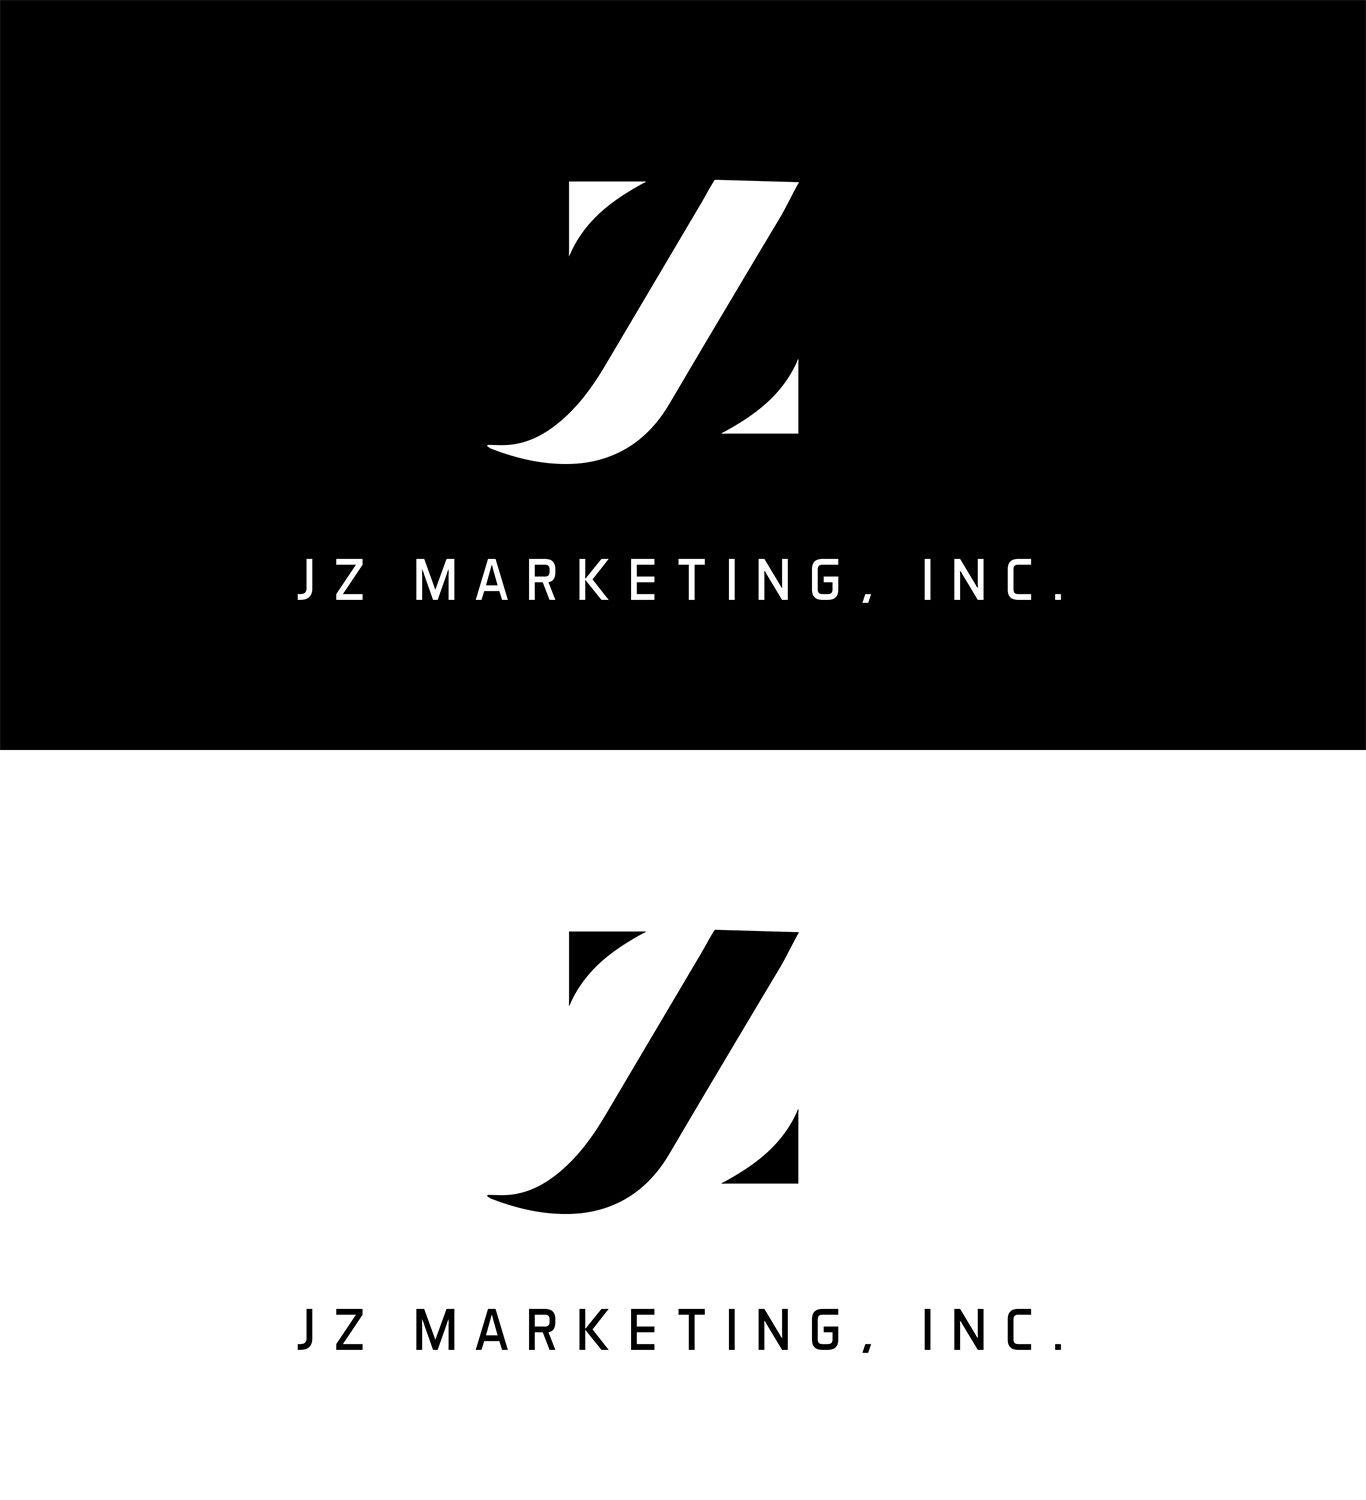 JZ Logo - Direct Marketing Company needs a logo design Logo Designs for JZ